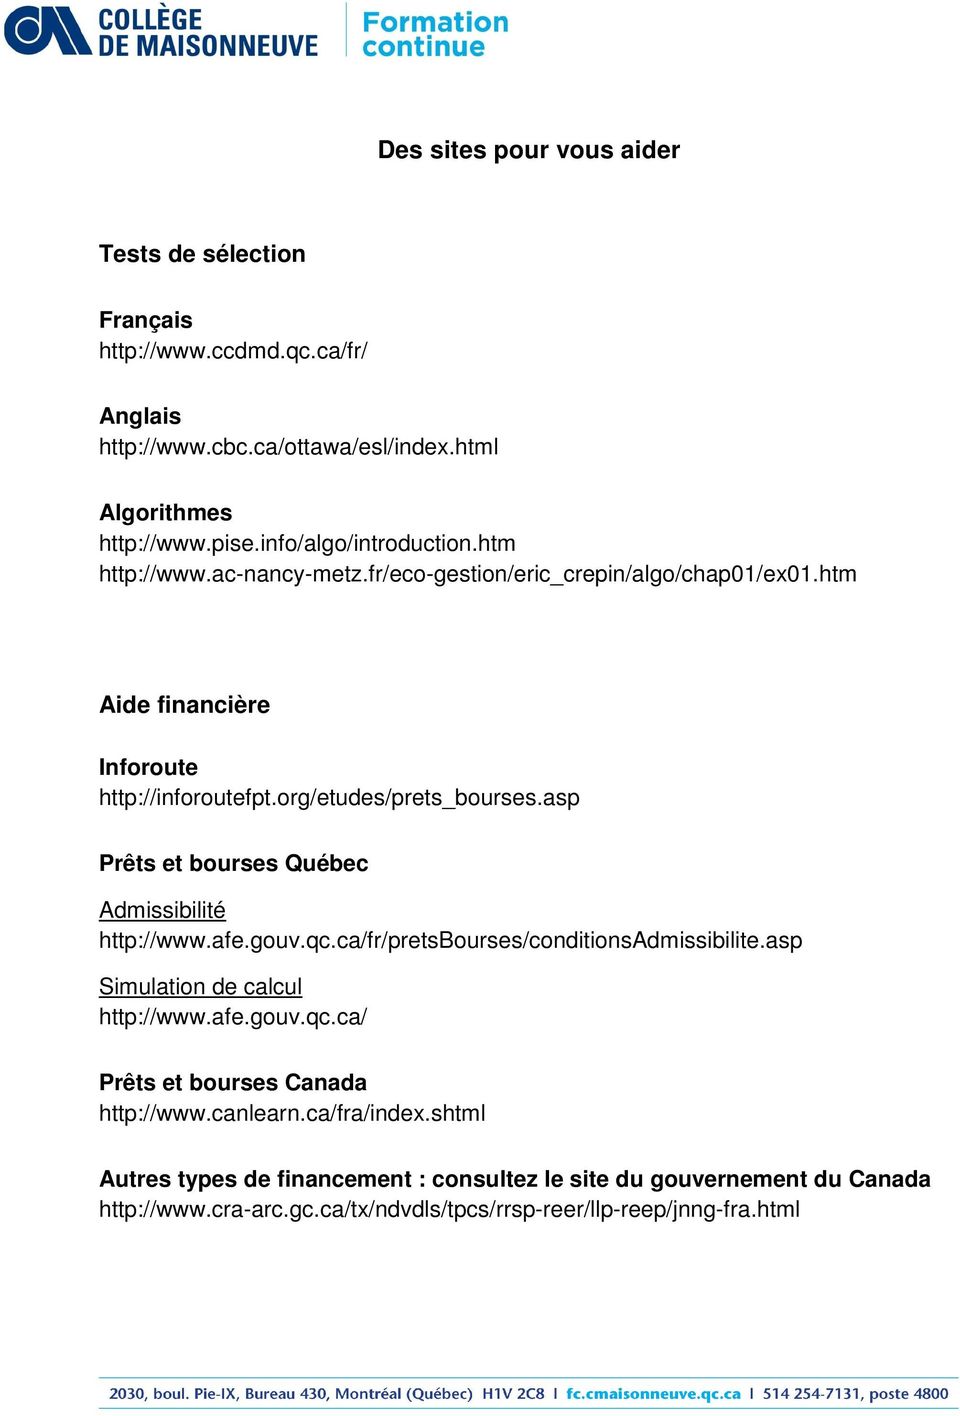 asp Prêts et bourses Québec Admissibilité http://www.afe.gouv.qc.ca/fr/pretsbourses/conditionsadmissibilite.asp Simulation de calcul http://www.afe.gouv.qc.ca/ Prêts et bourses Canada http://www.